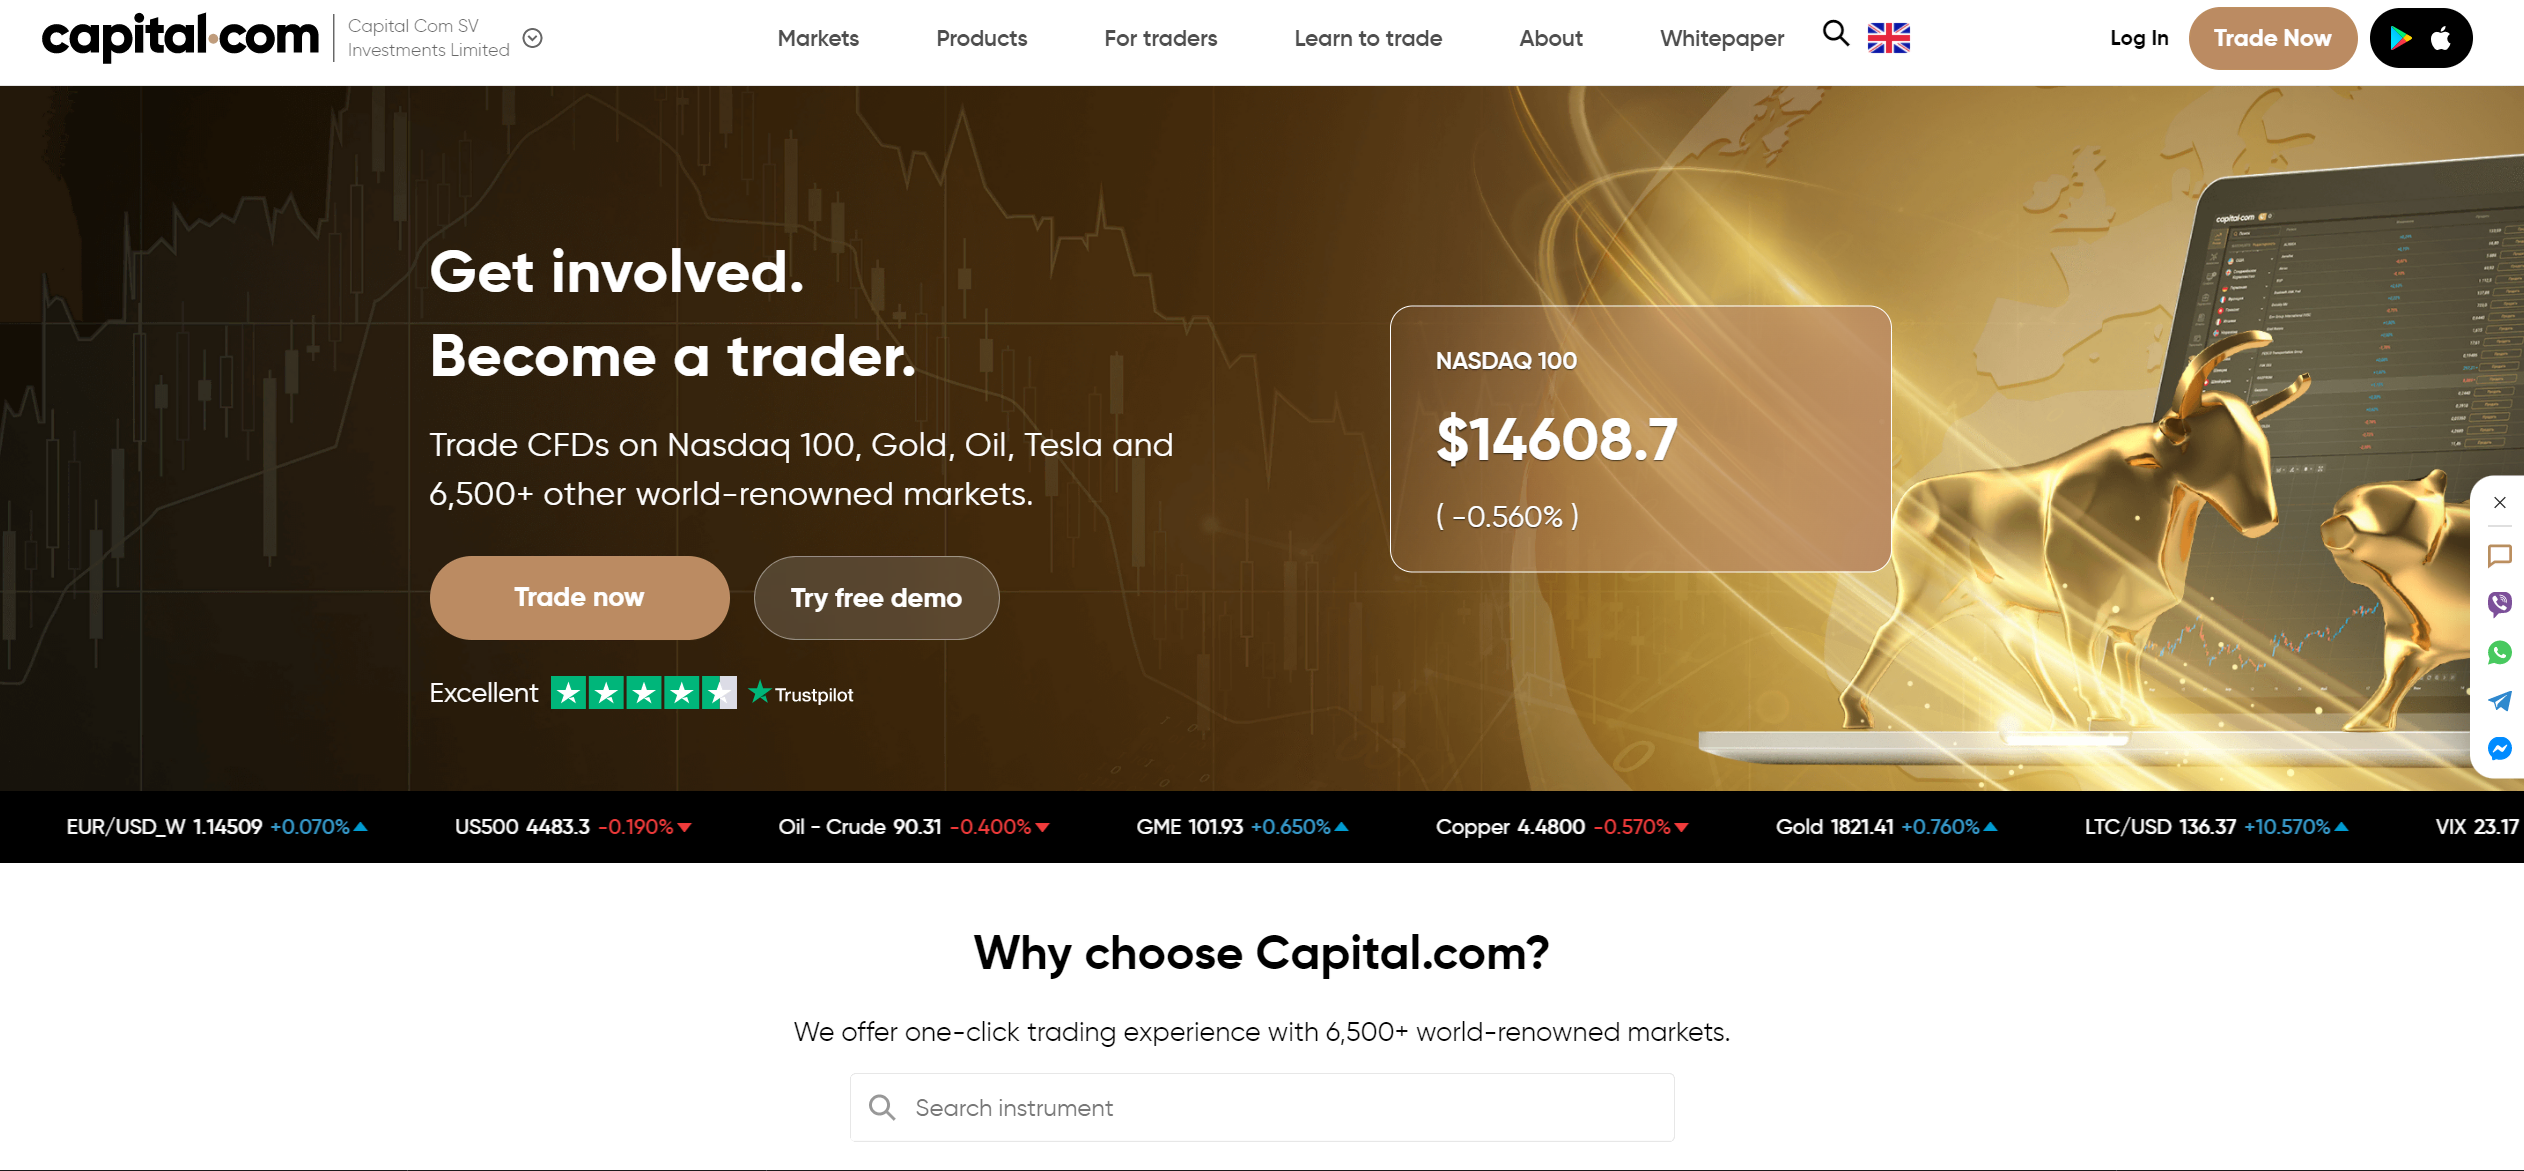 Oficiální stránky Capital.com